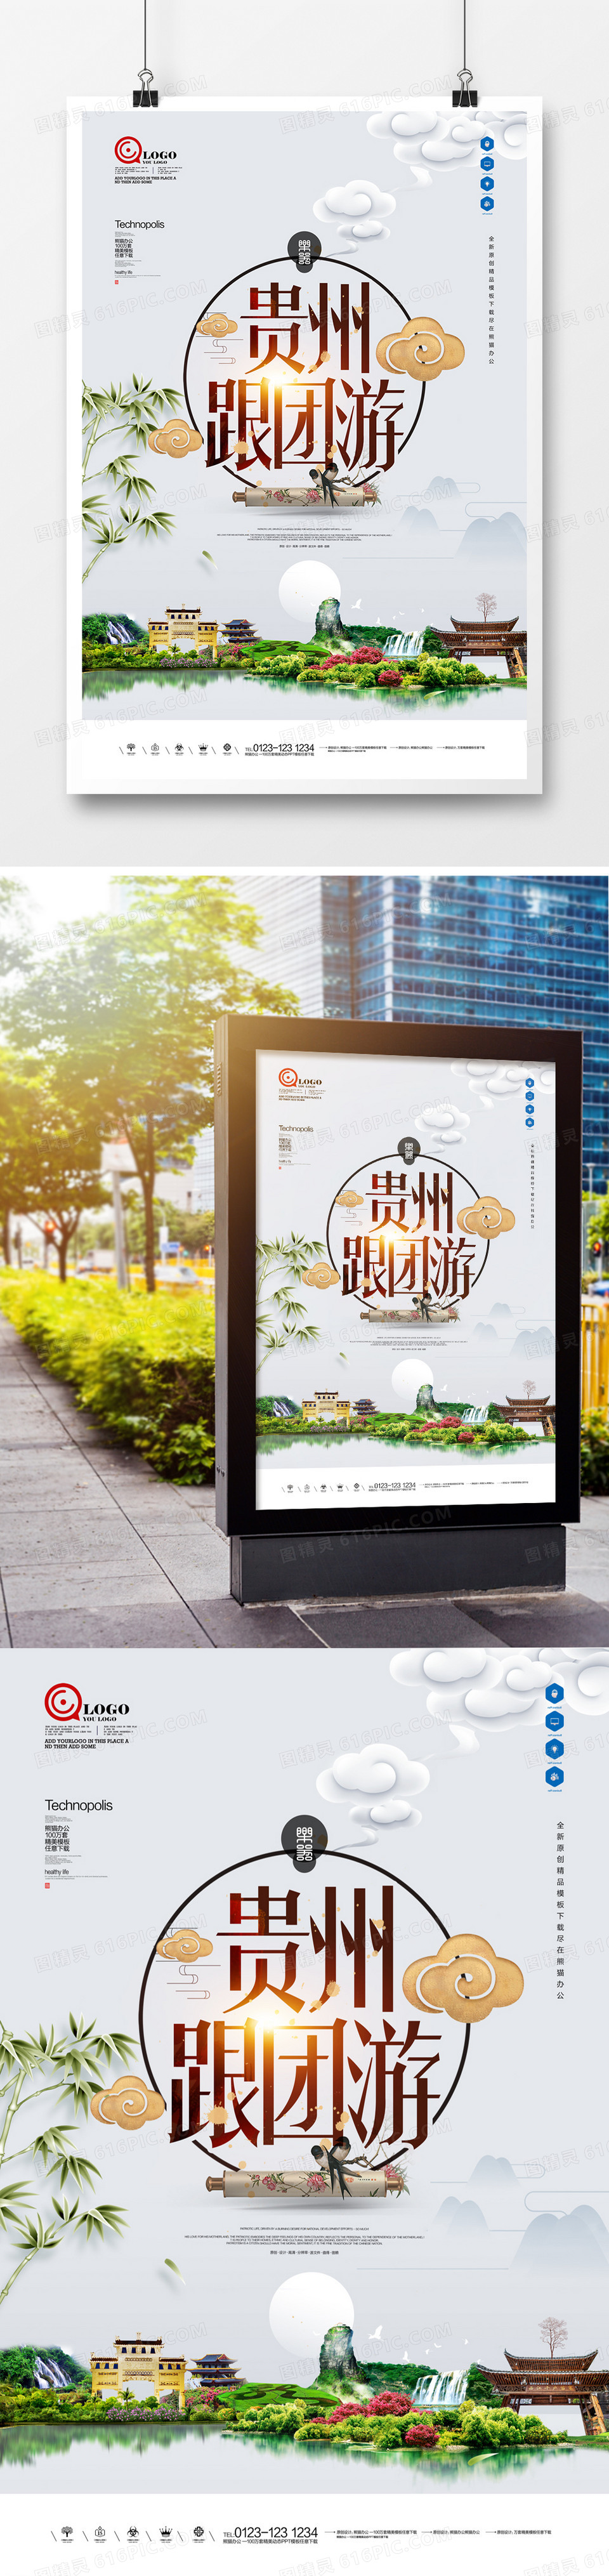 贵州跟团游原创宣传海报广告设计